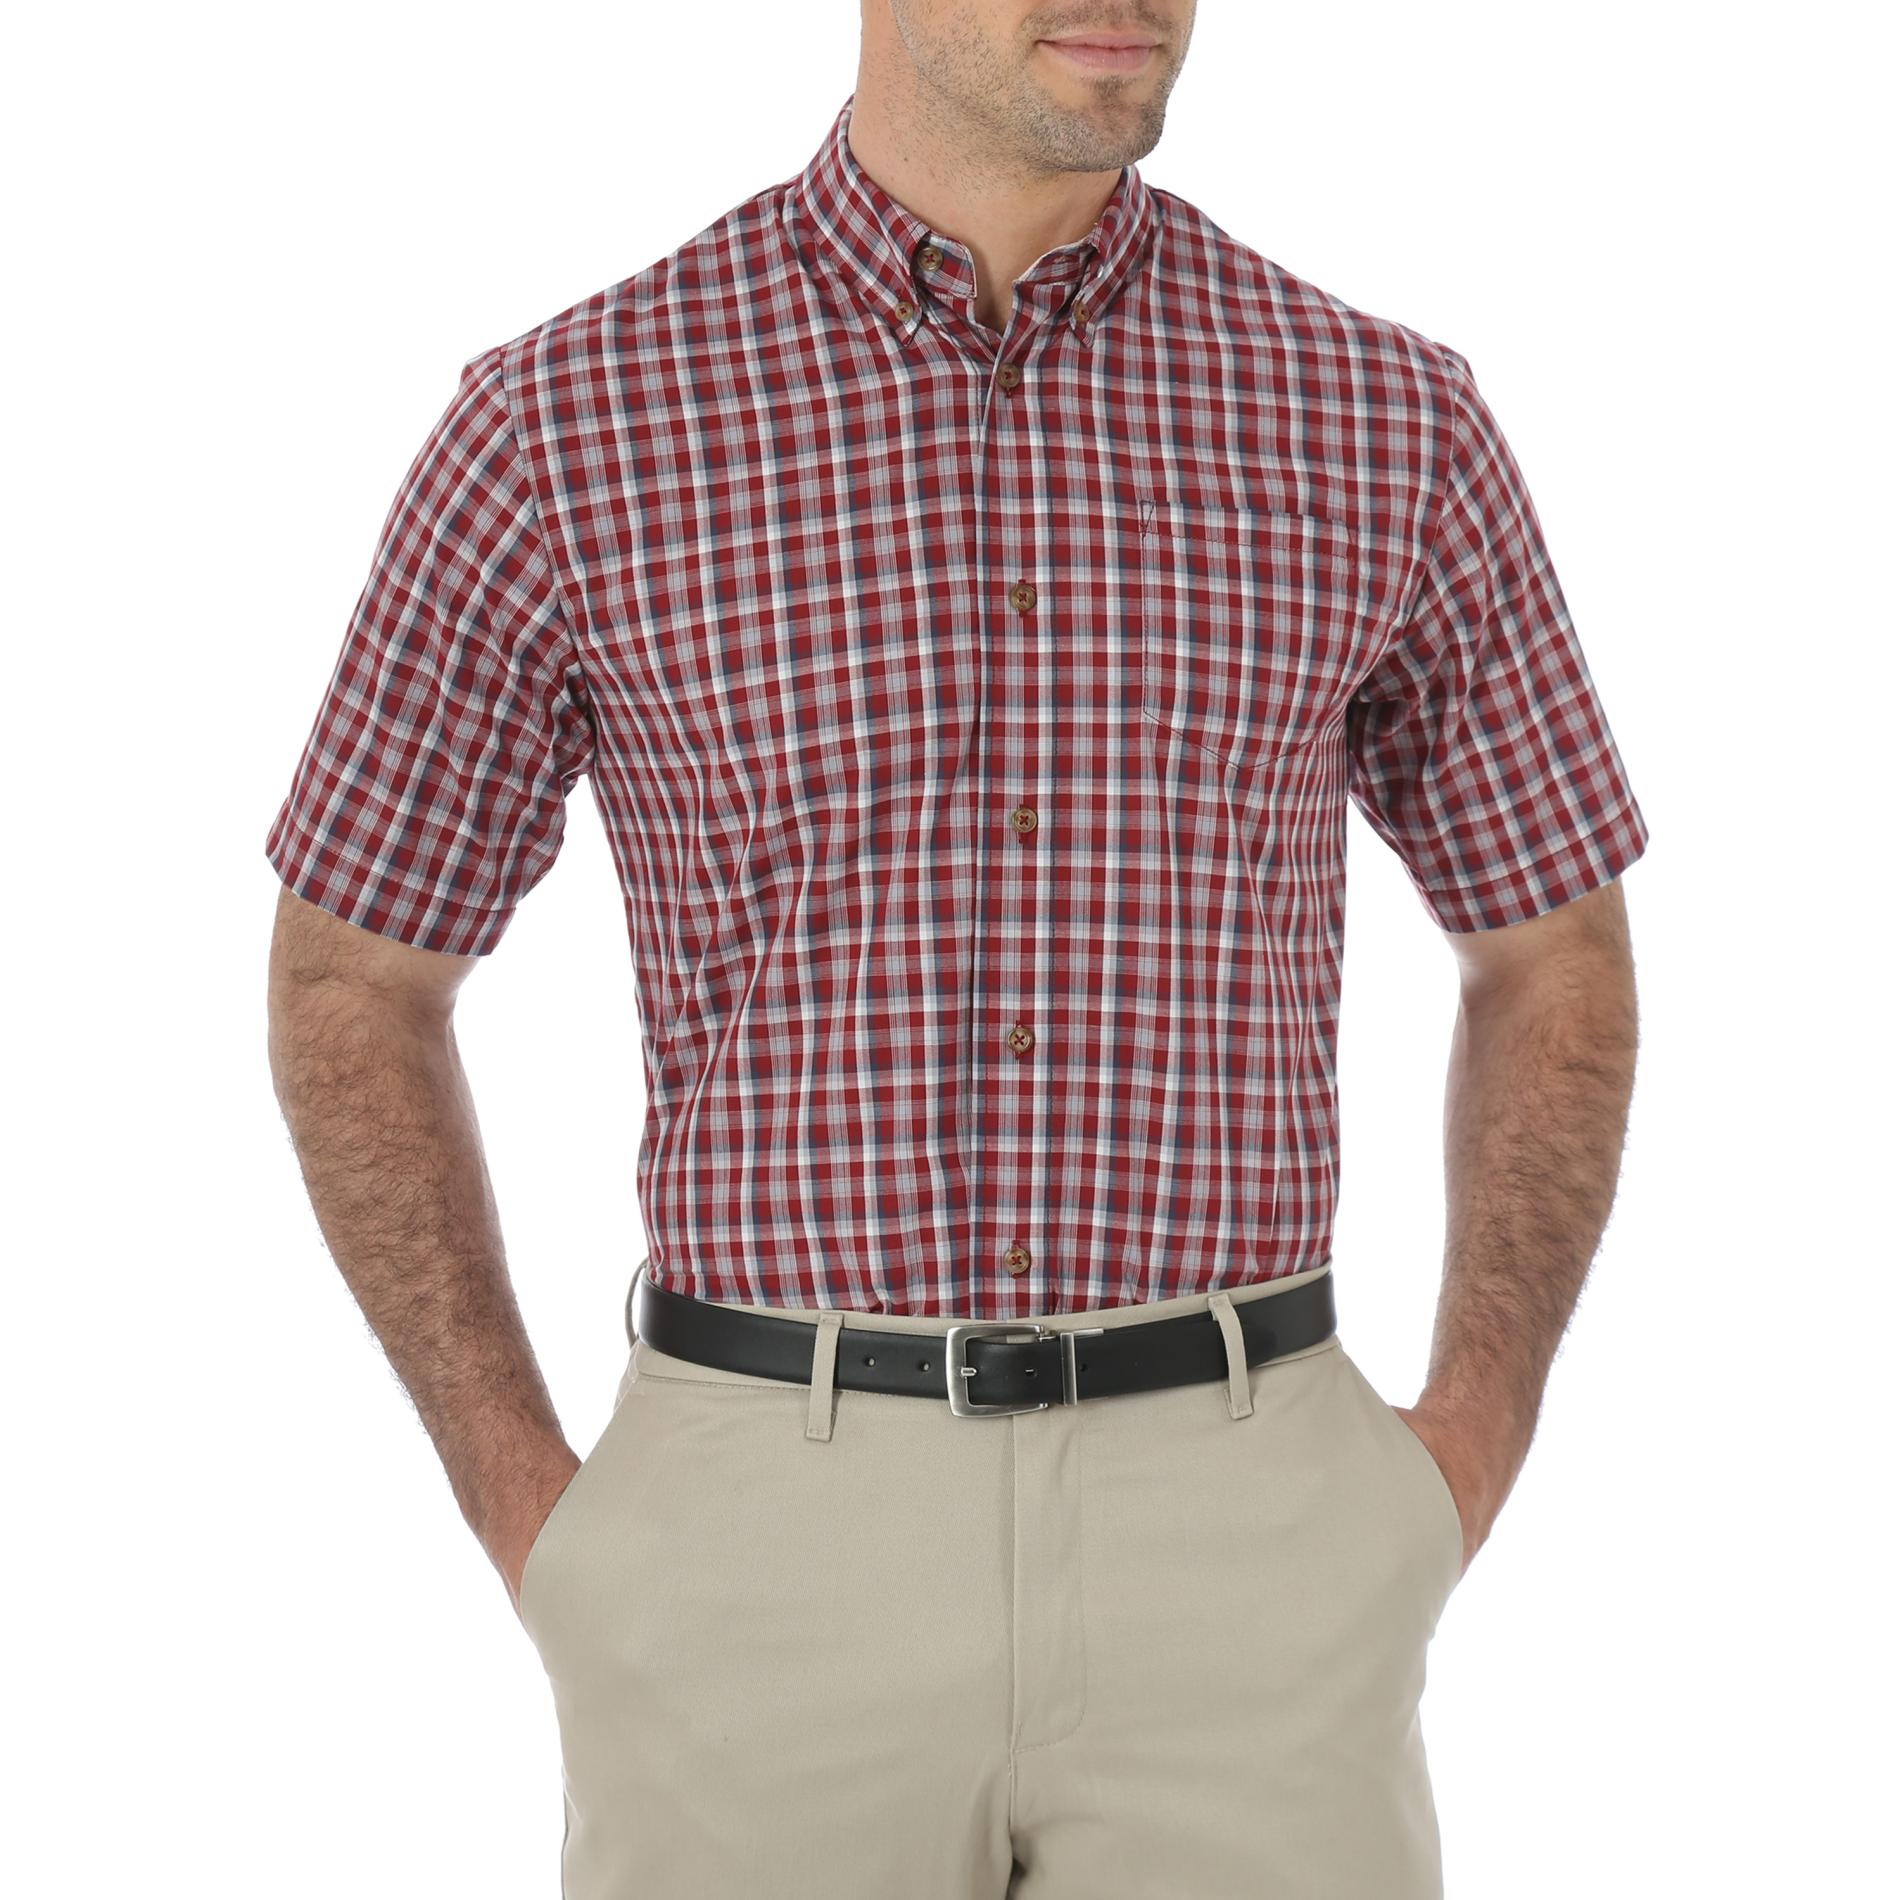 Wrangler Men's Wrinkle-Resistant Shirt - Plaid